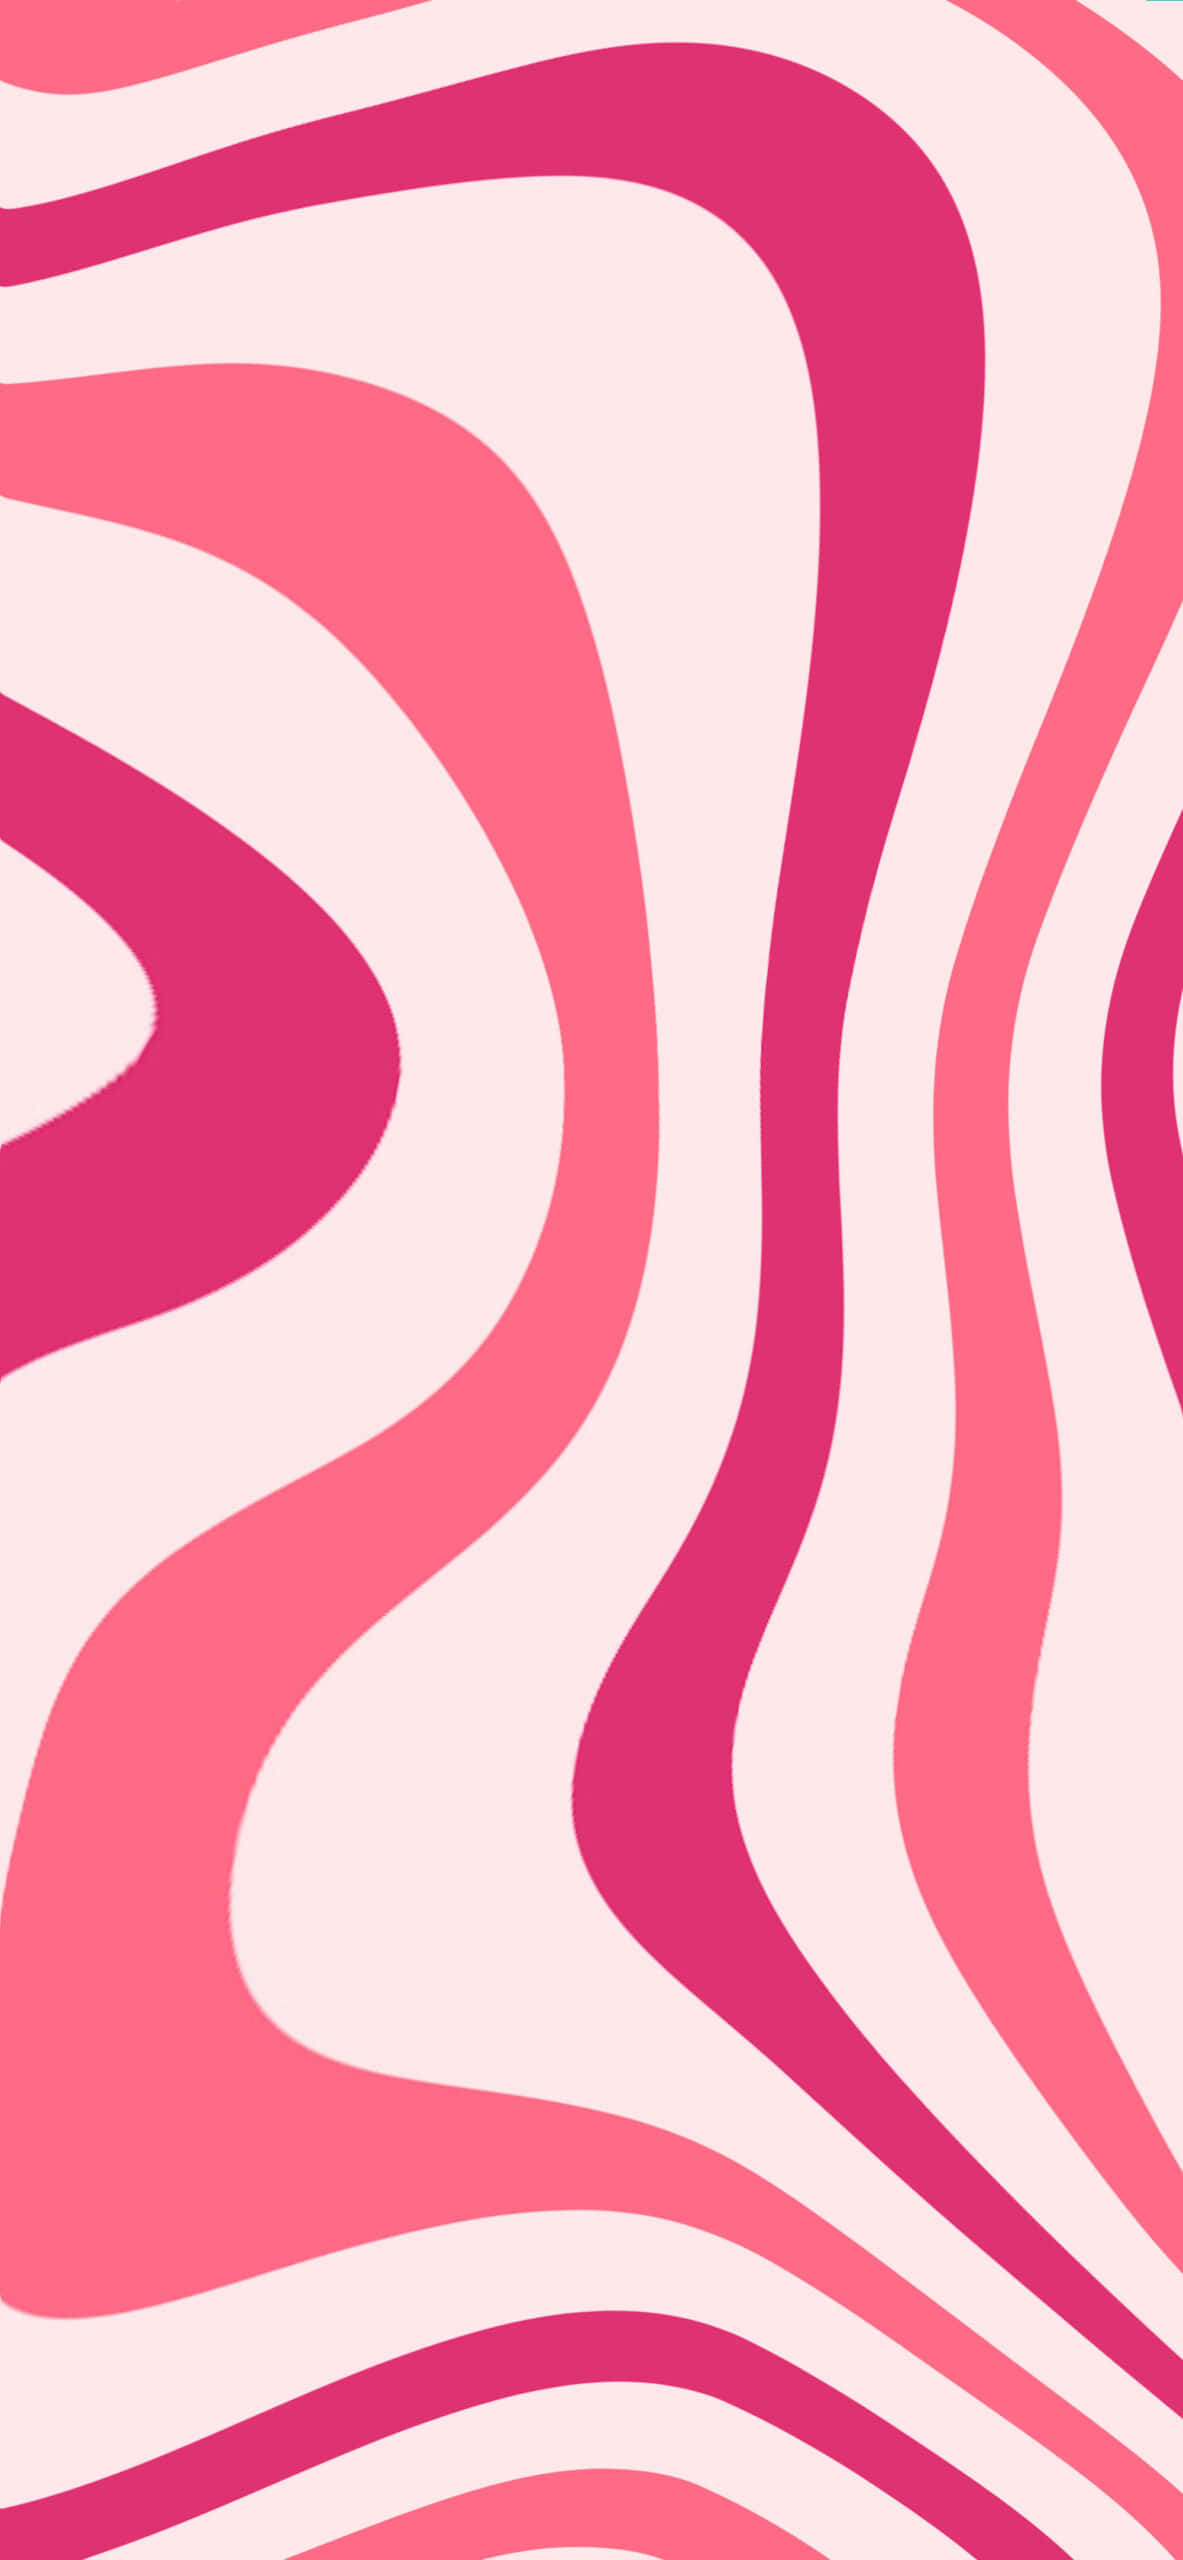 Pink Swirls Vector Art Background